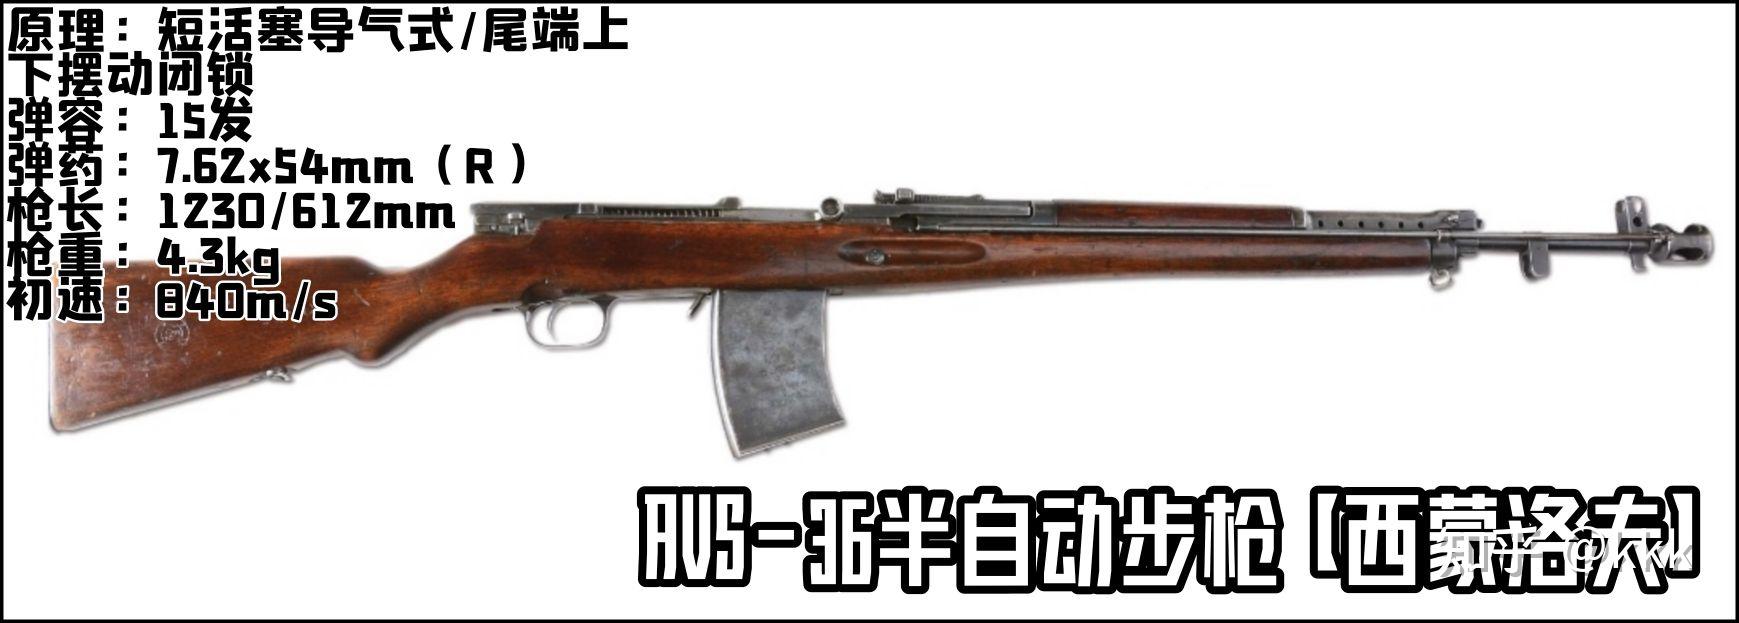 苏联轻武器发展史步枪篇